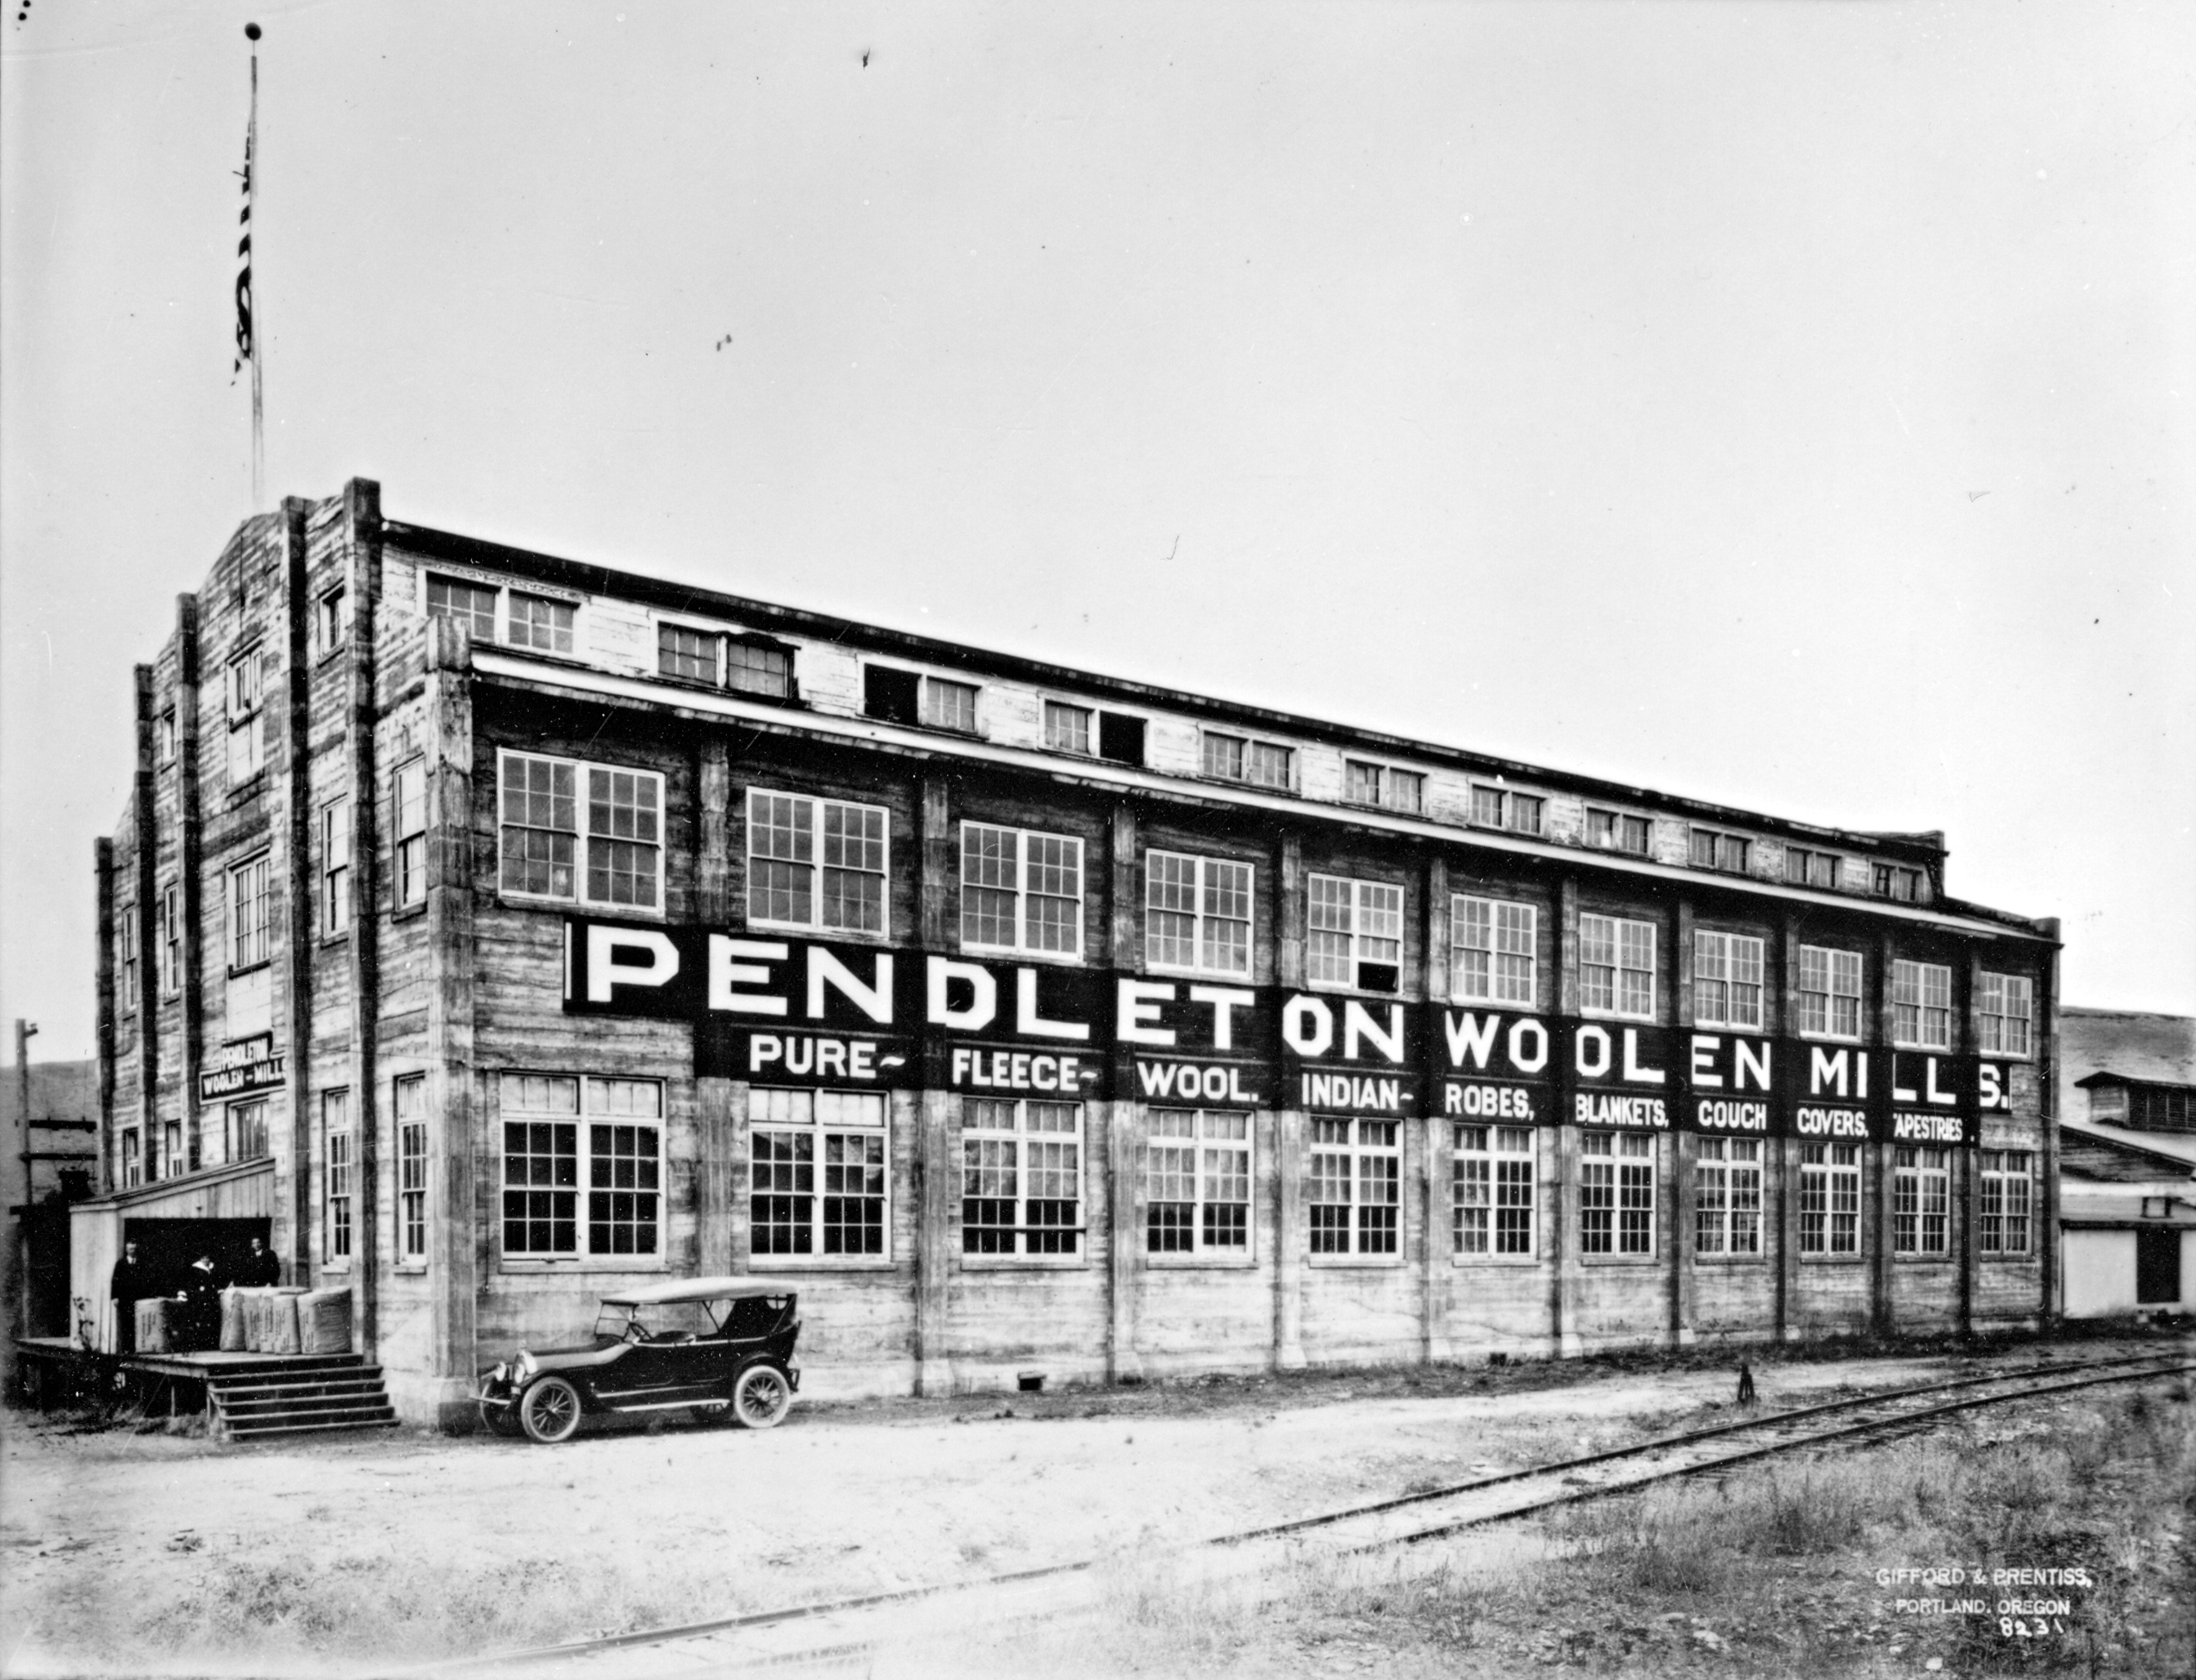  Pendleton Woolen Mills (date unknown).